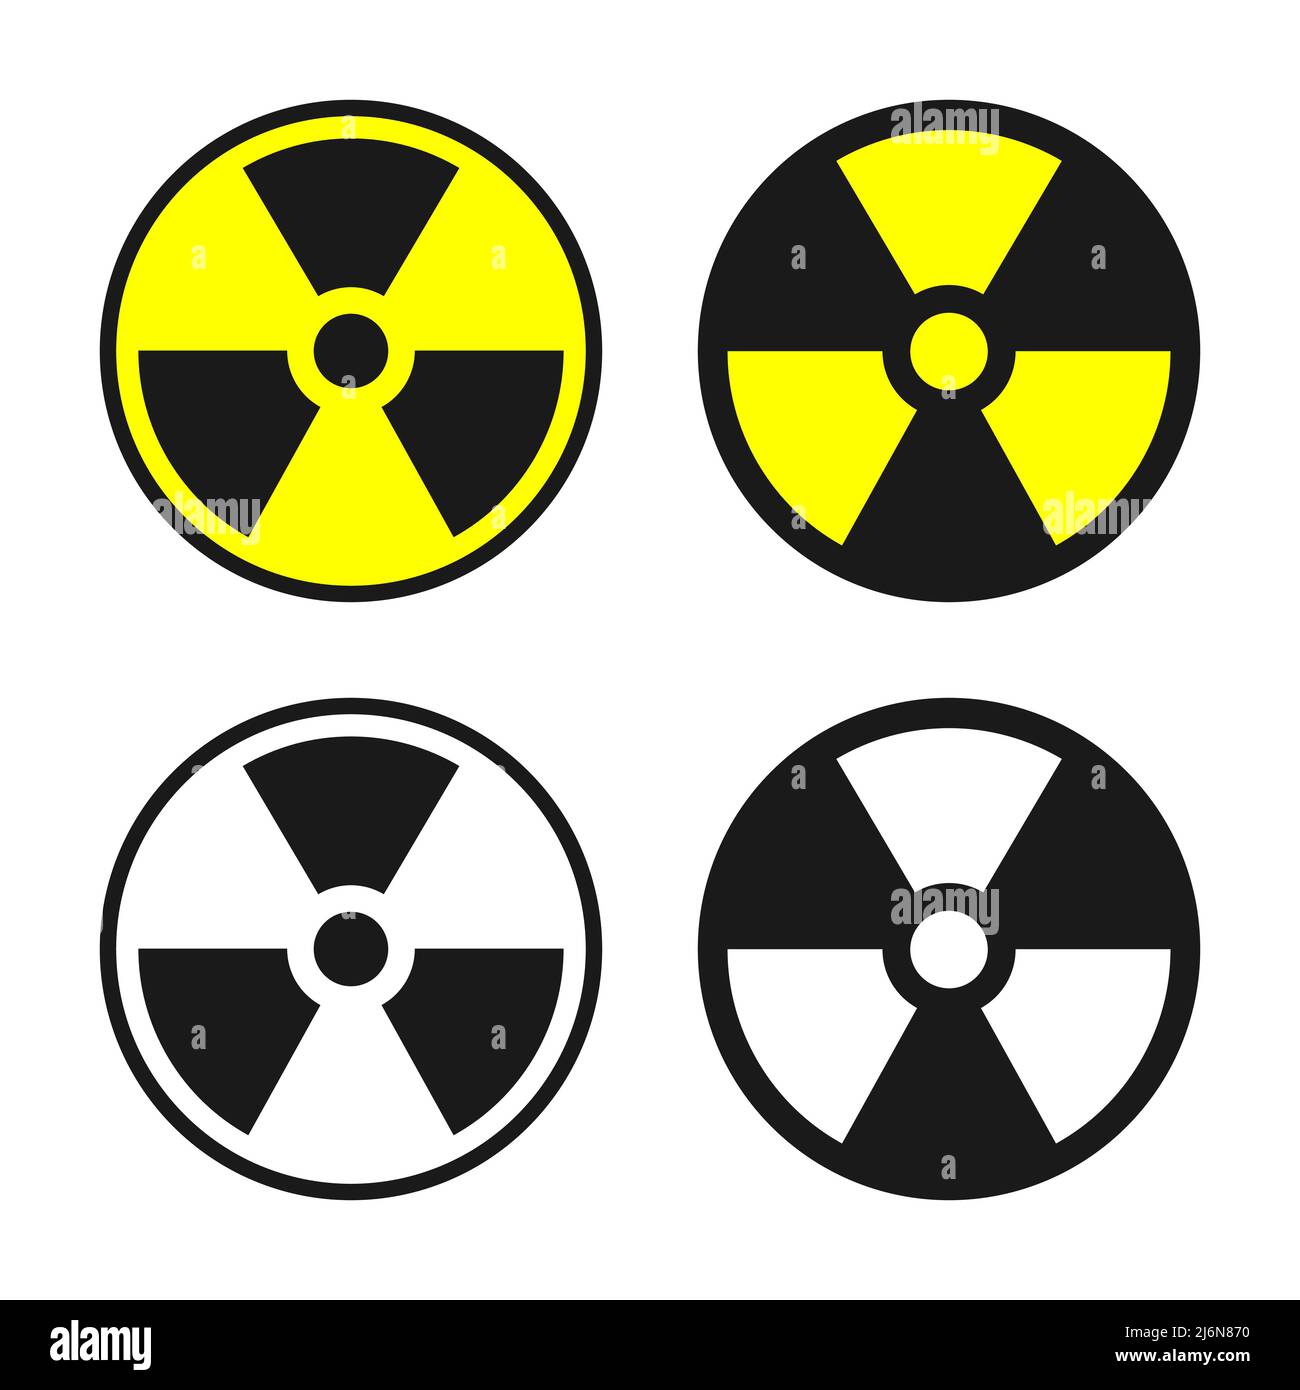 Radioactive warning sign vector set. Circle shape black and yellow radioactivity symbol. Stock Vector